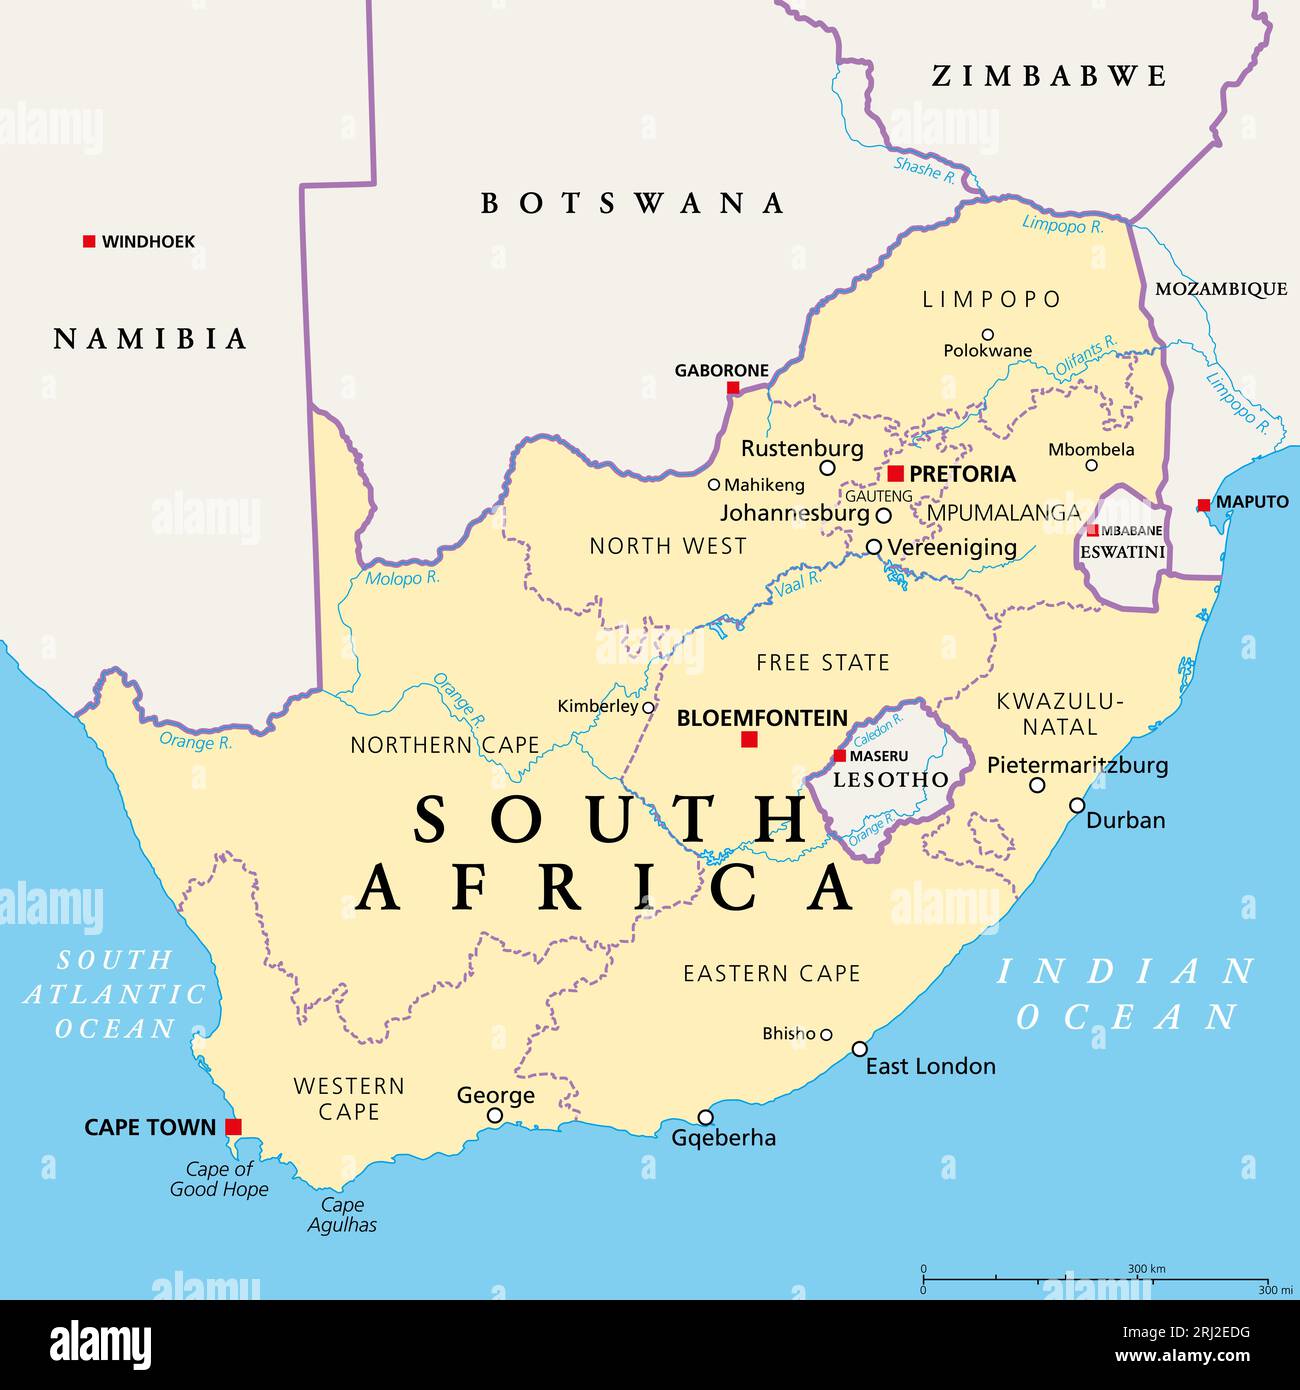 Südafrika, politische Landkarte mit Provinzen, größten Städten, internationalen und administrativen Grenzen. Republik und südlichstes Land Afrikas. Stockfoto